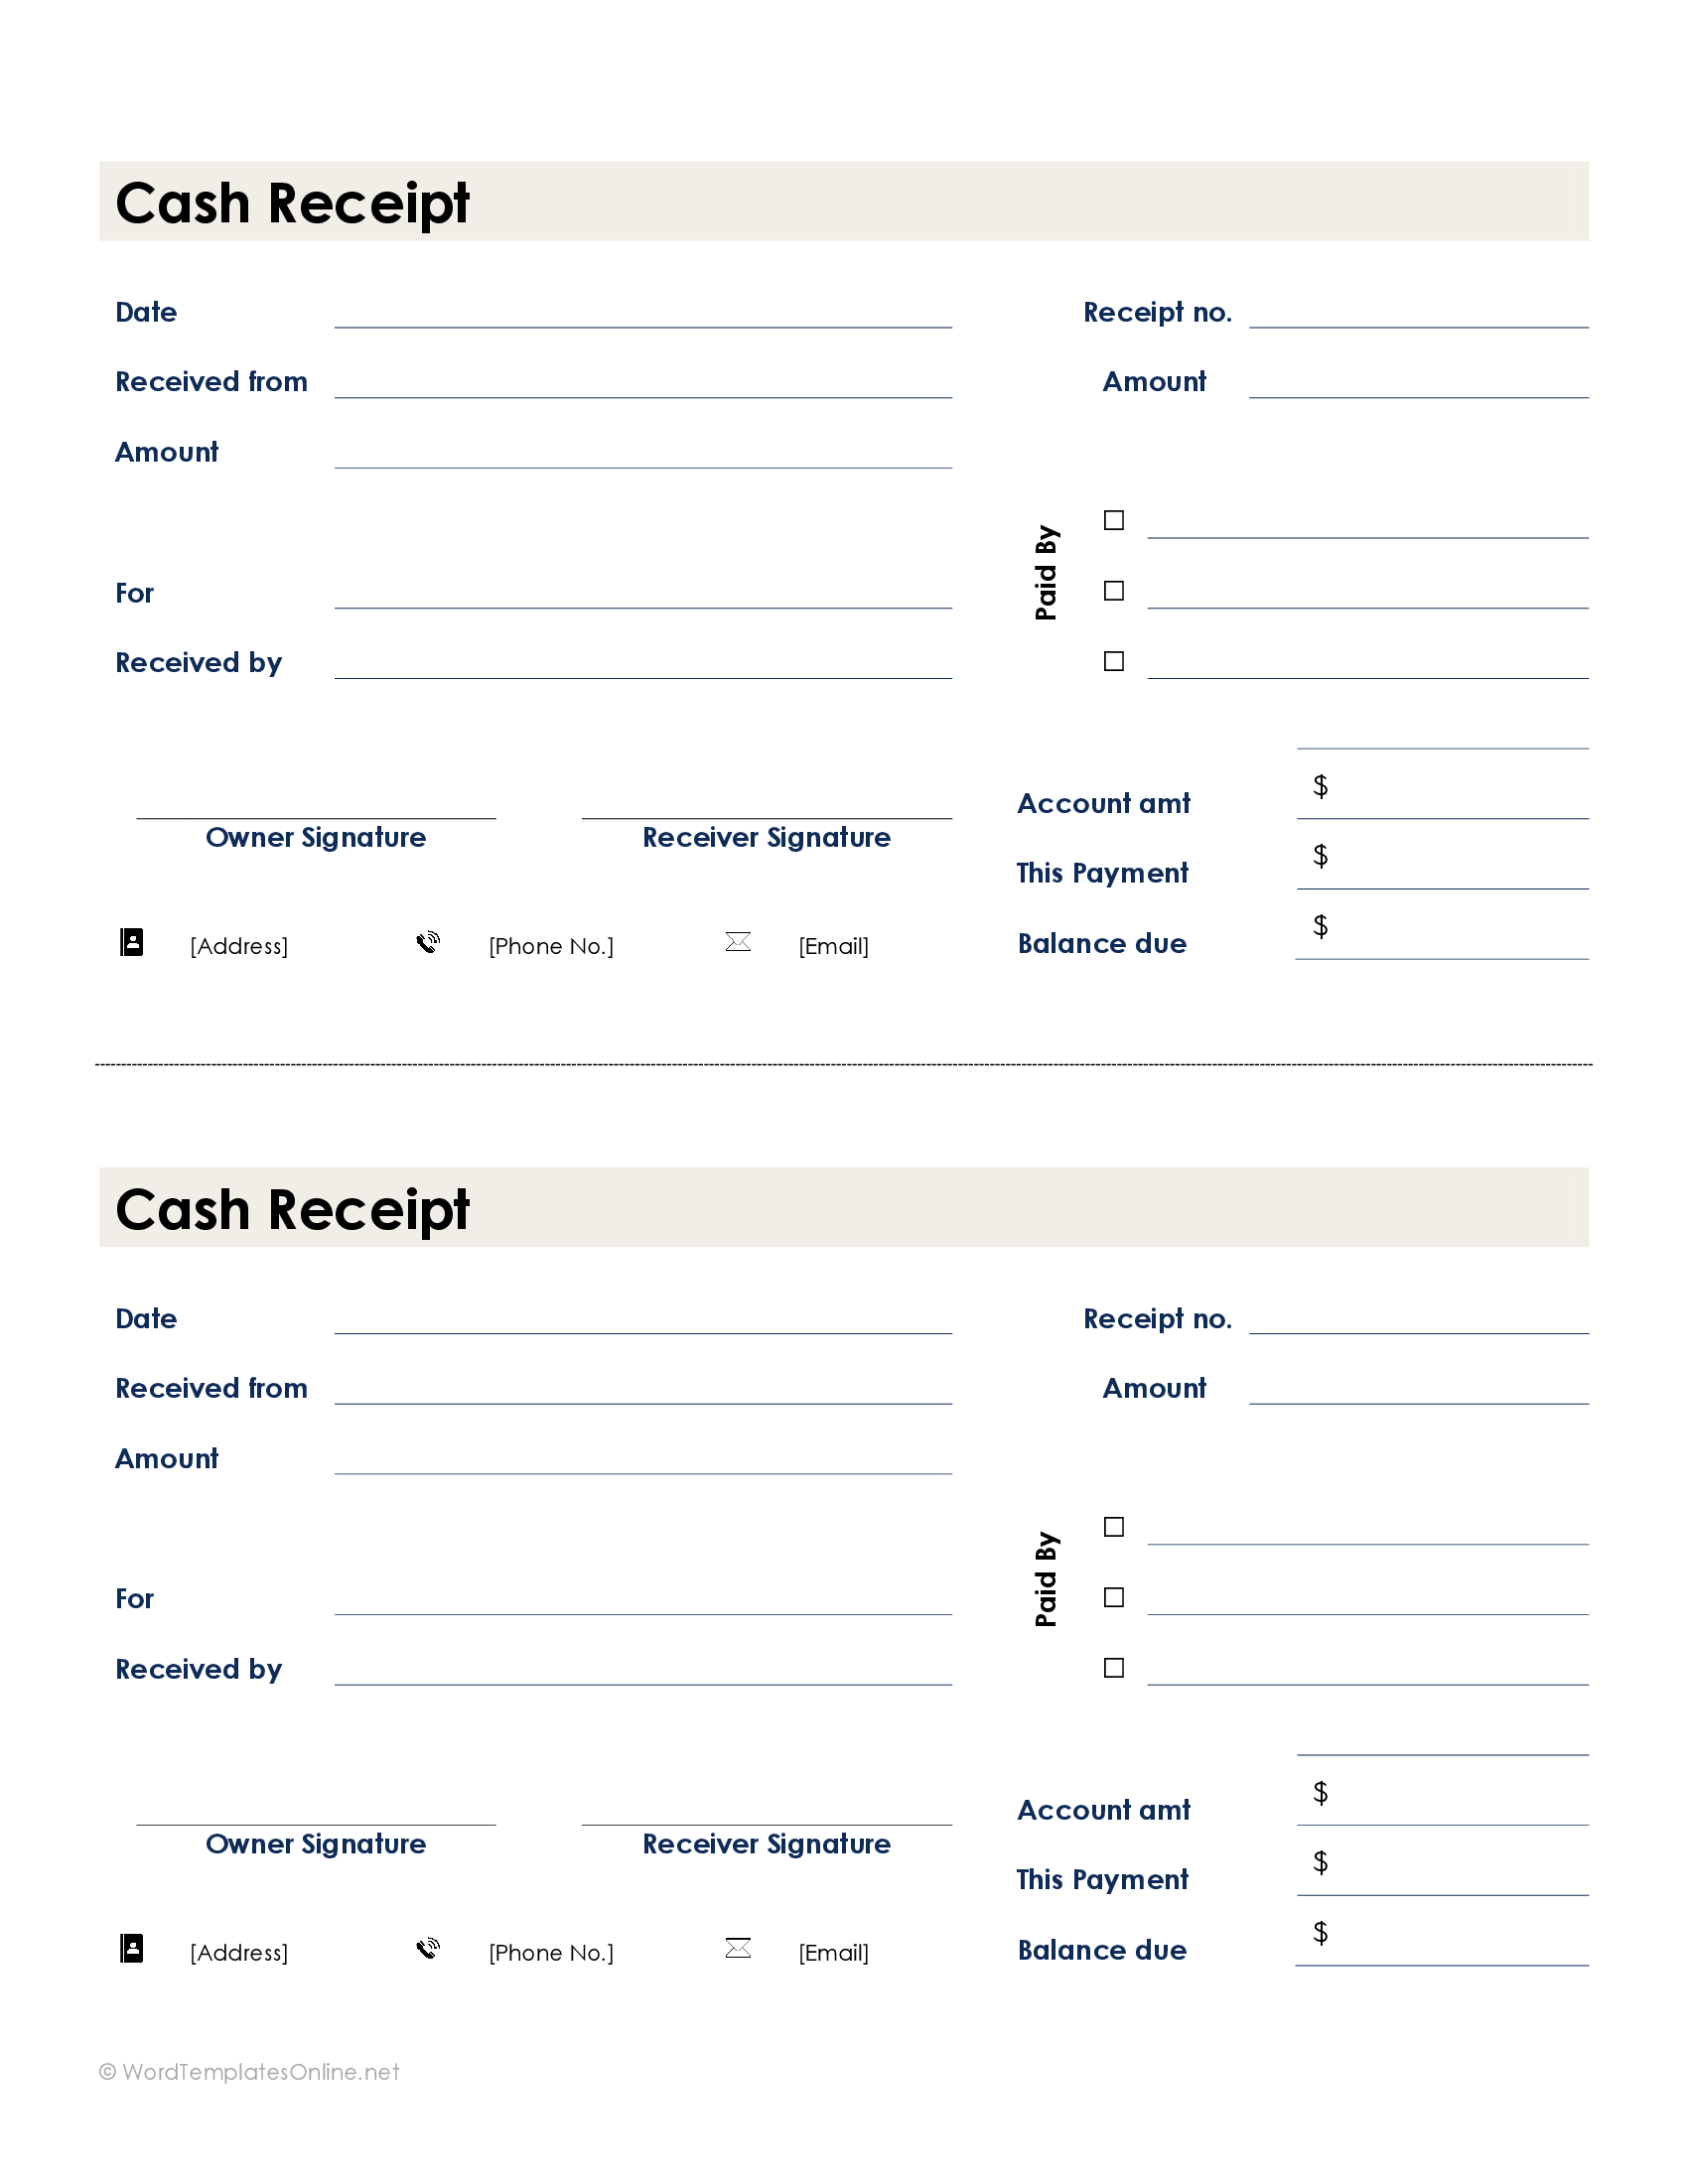 Modern cash receipt template - Word